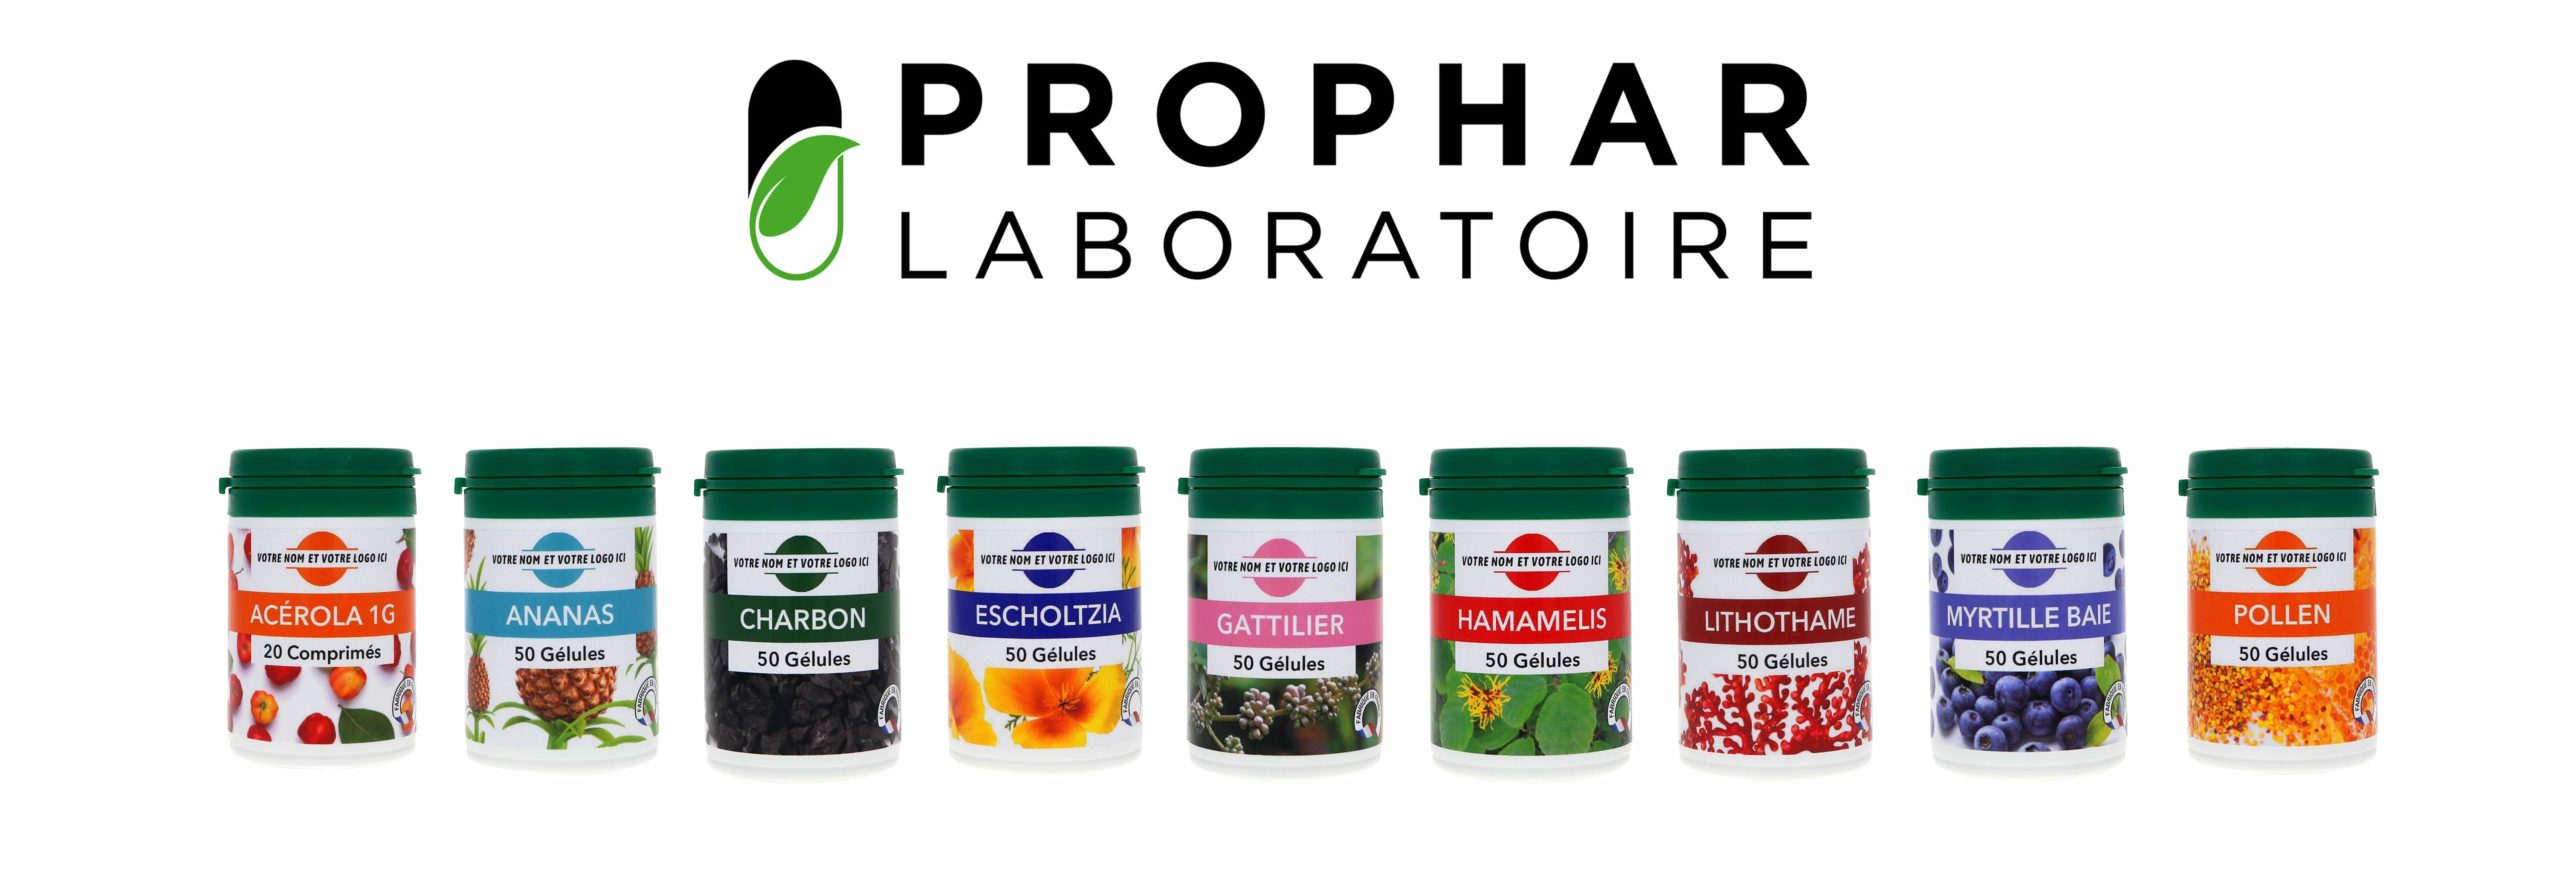 Laboratoire Prophar - Full Service - Faconnage et conditionnement de complément alimentaires